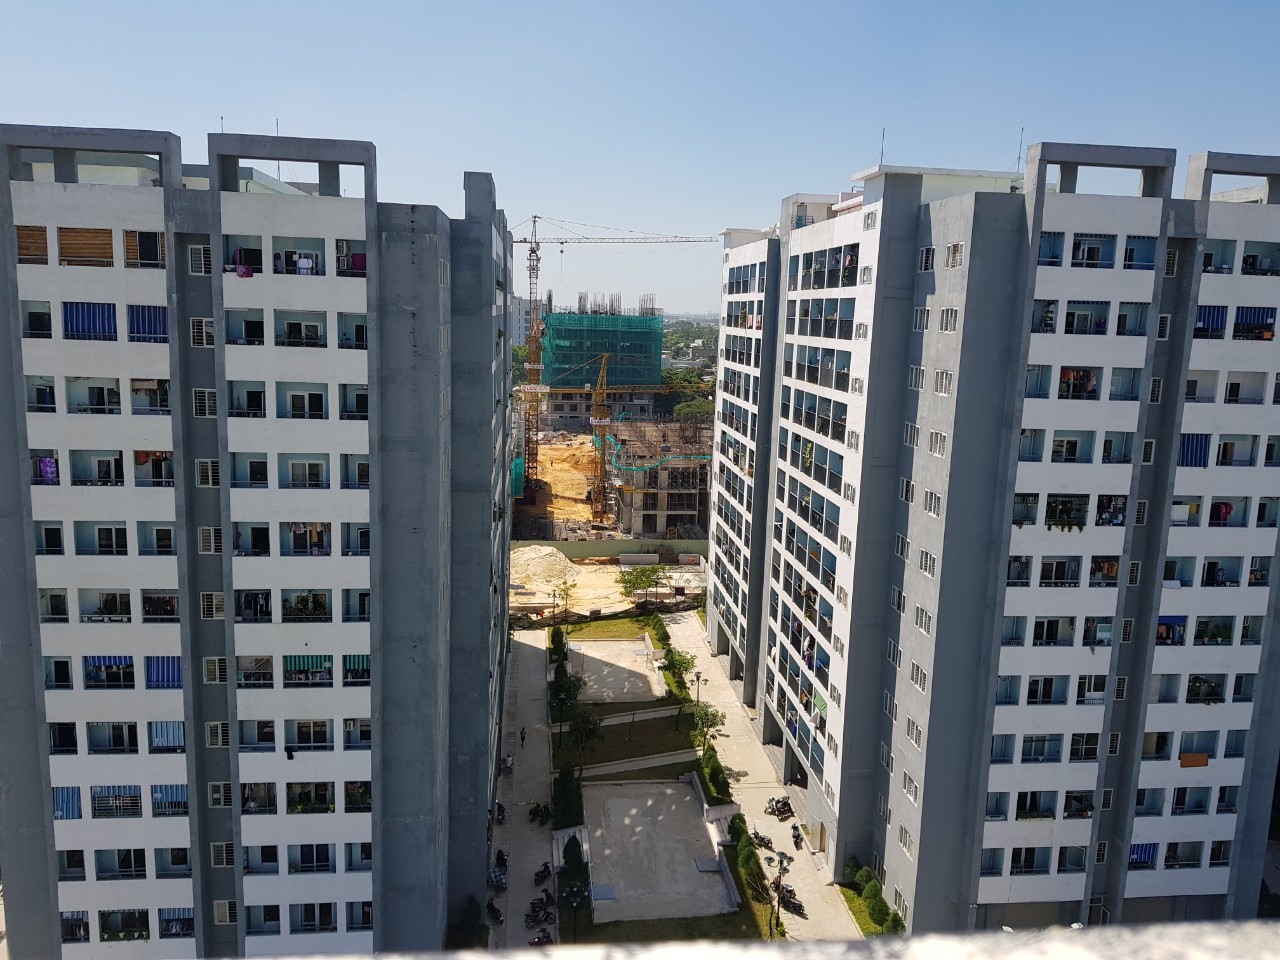  Nhiều người có điều kiện vẫn chiếm dụng căn hộ chung cư ở Đà Nẵng: Hữu Long